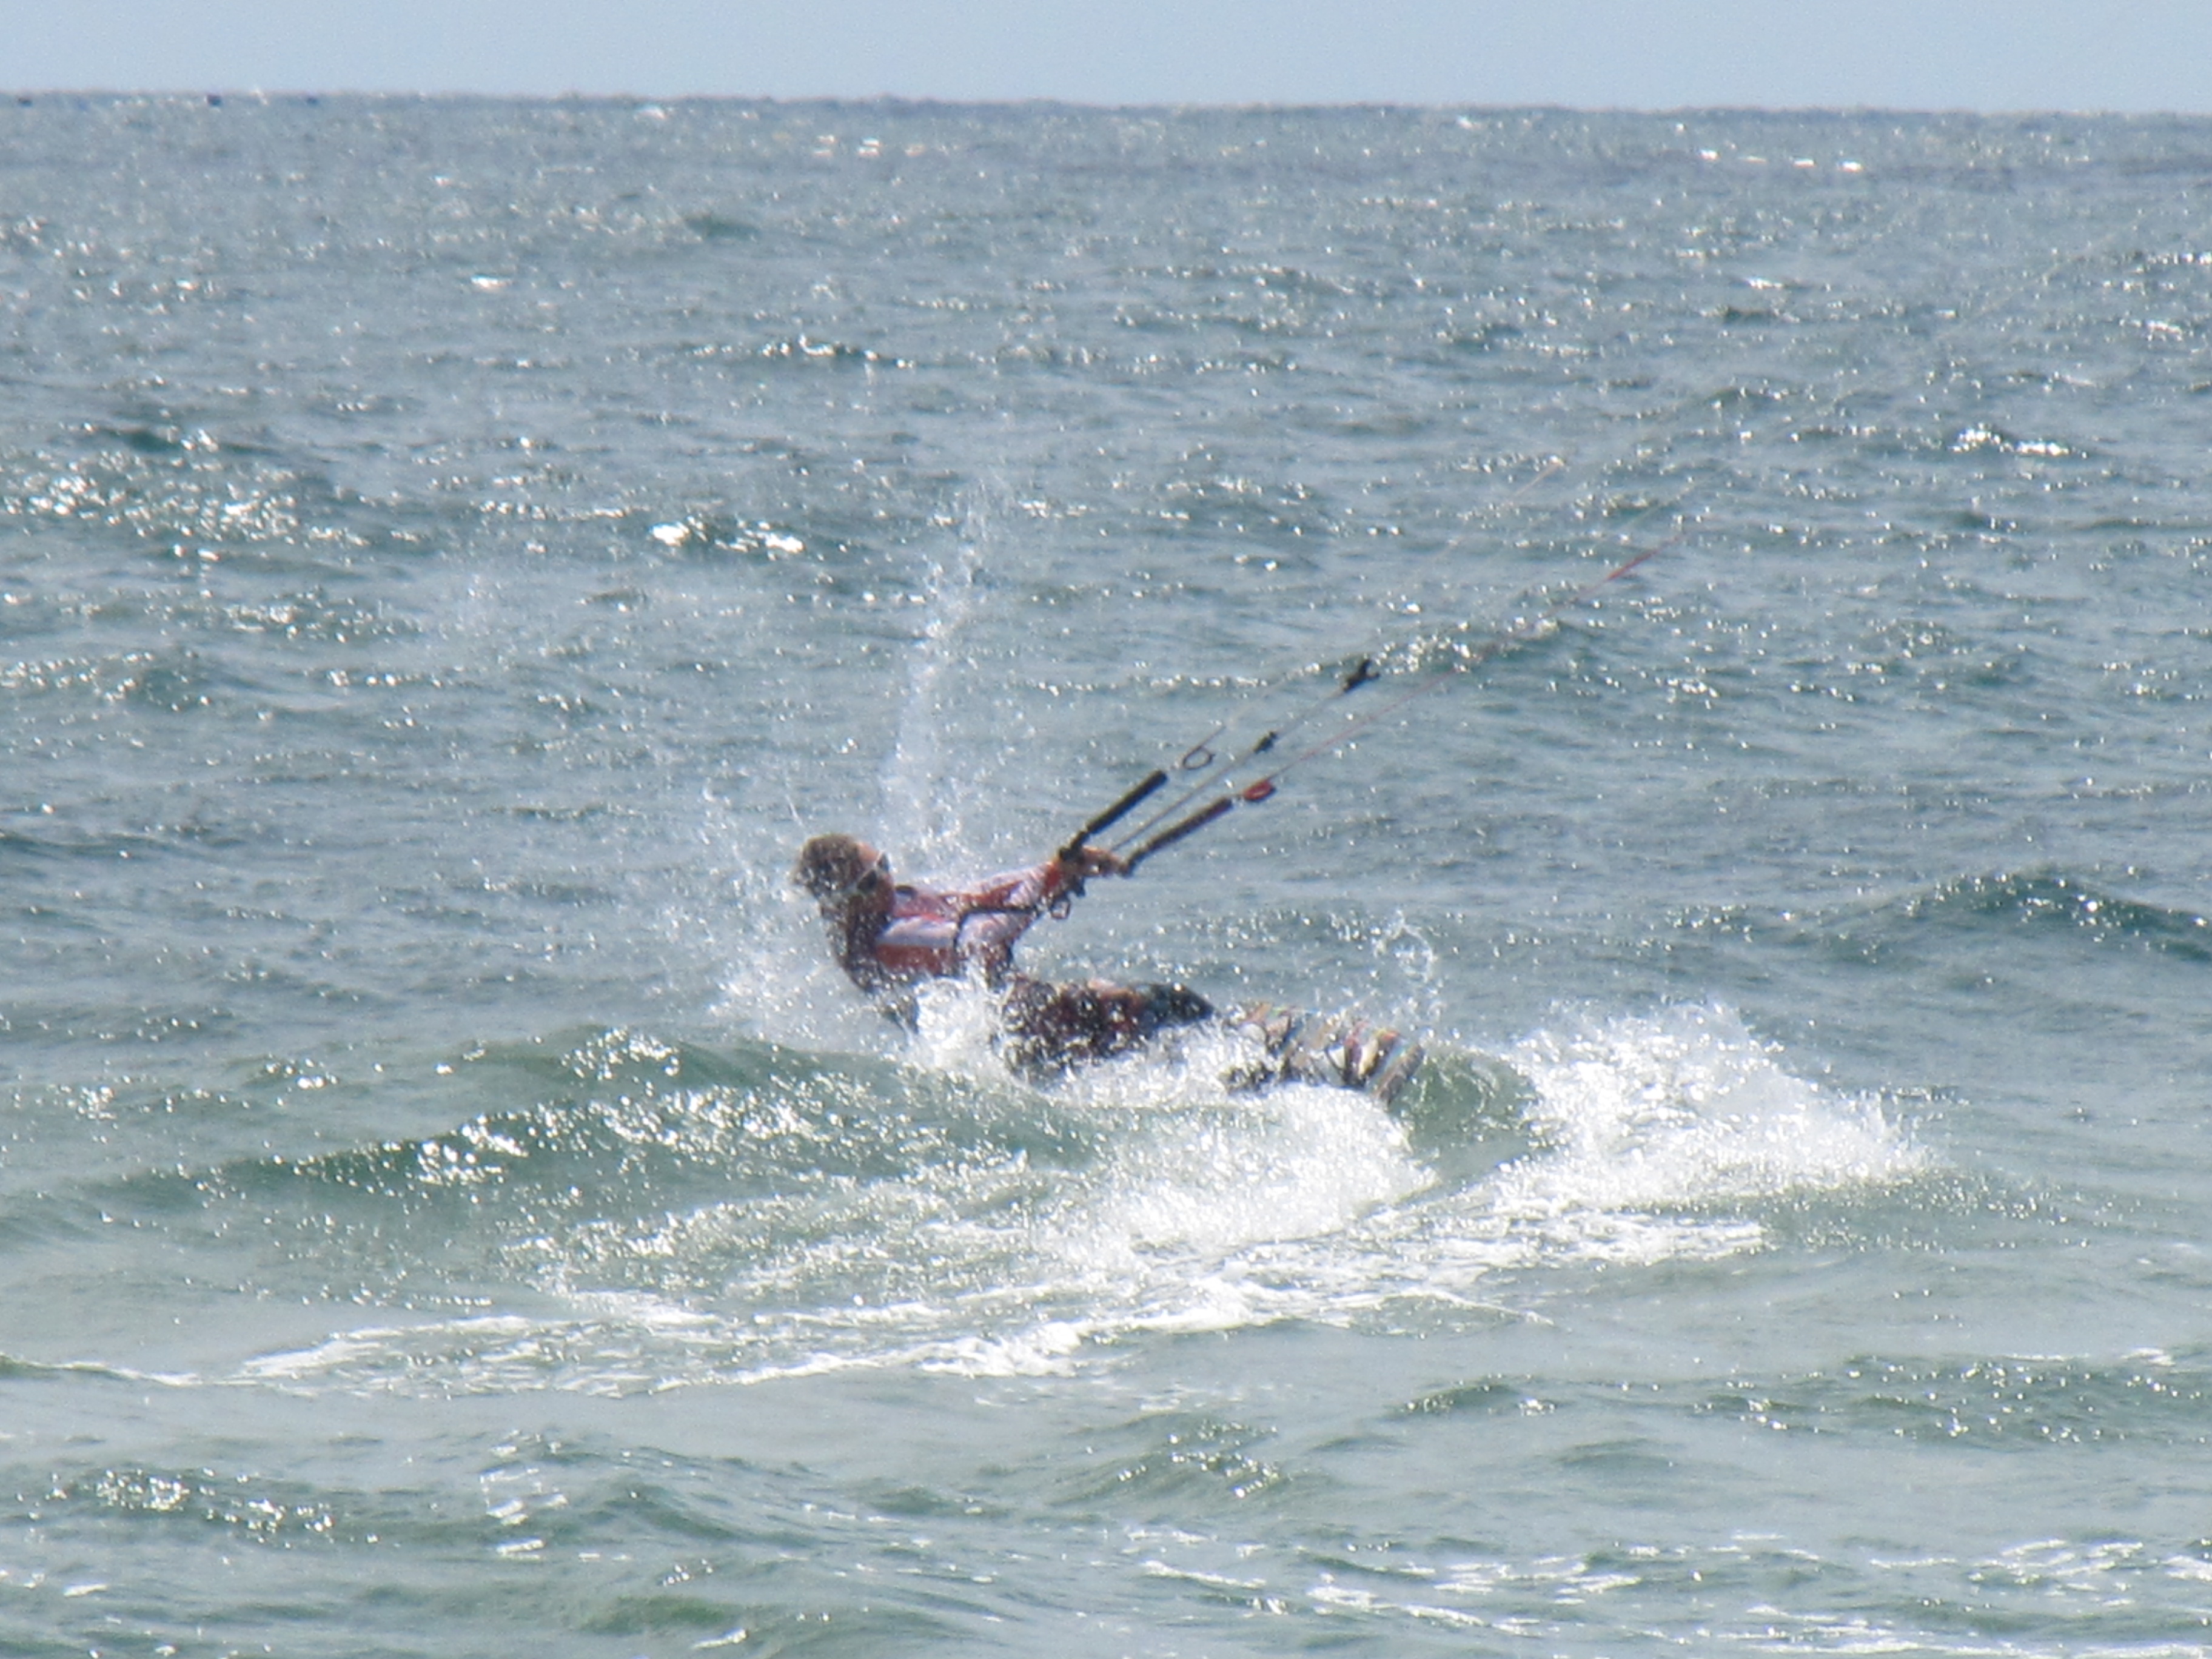 A kitesurfer at sea photo